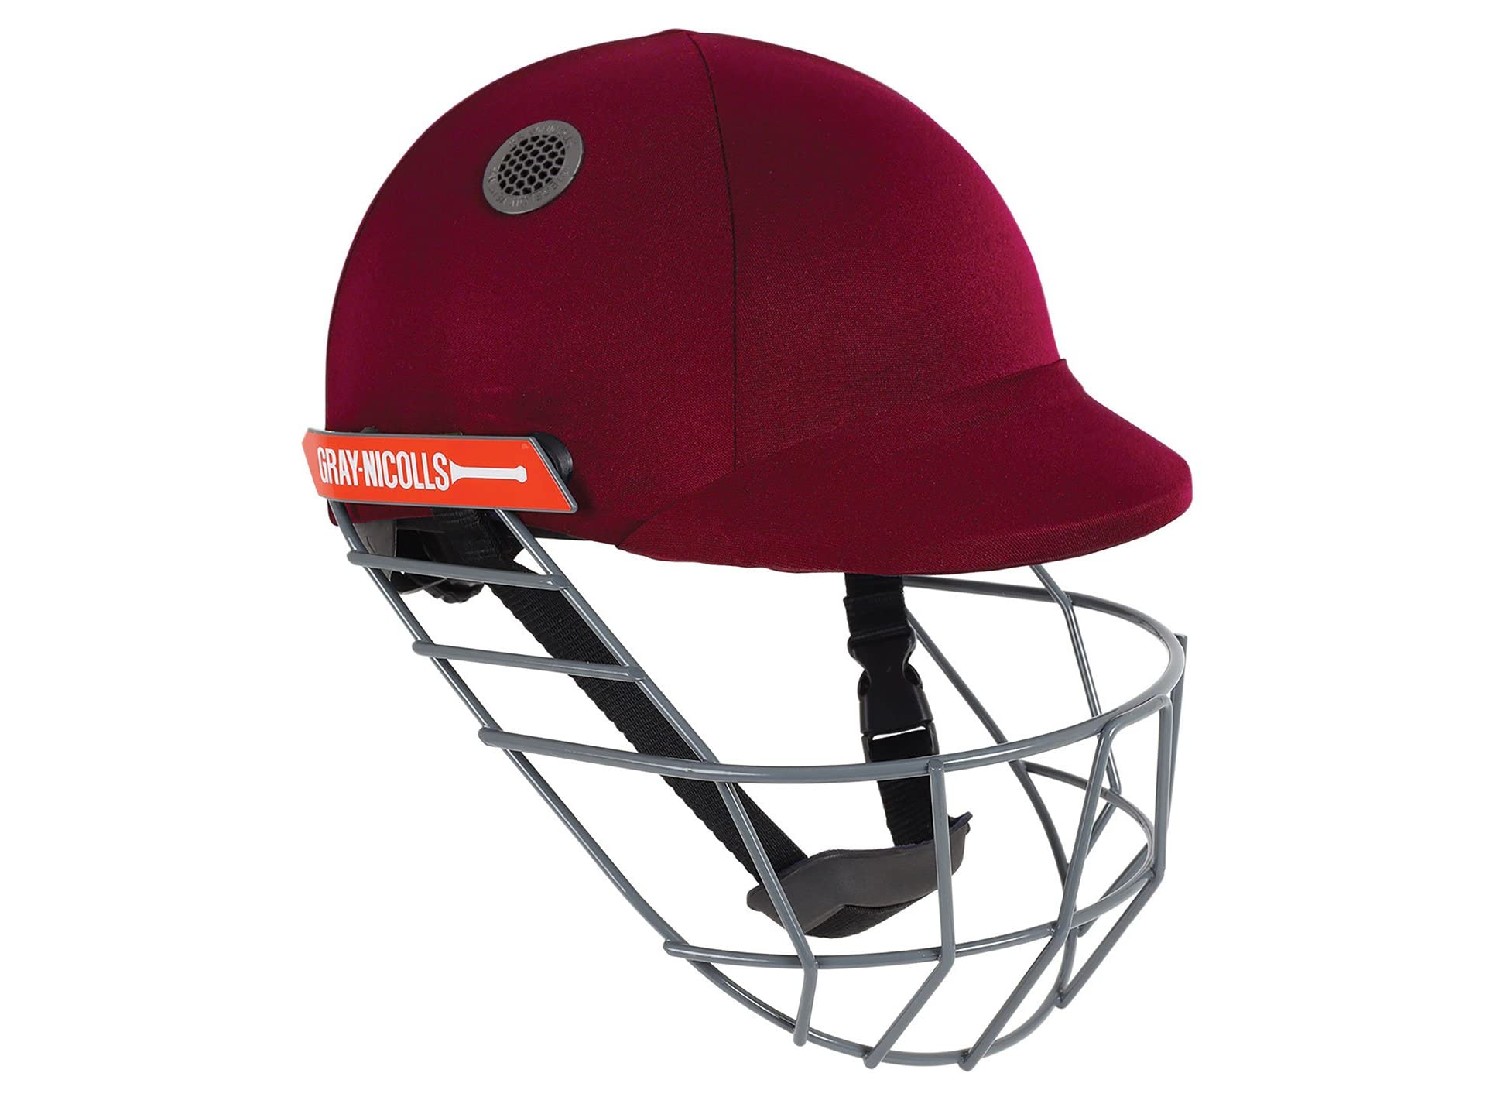 The Best Cricket Helmet in 2021 Review